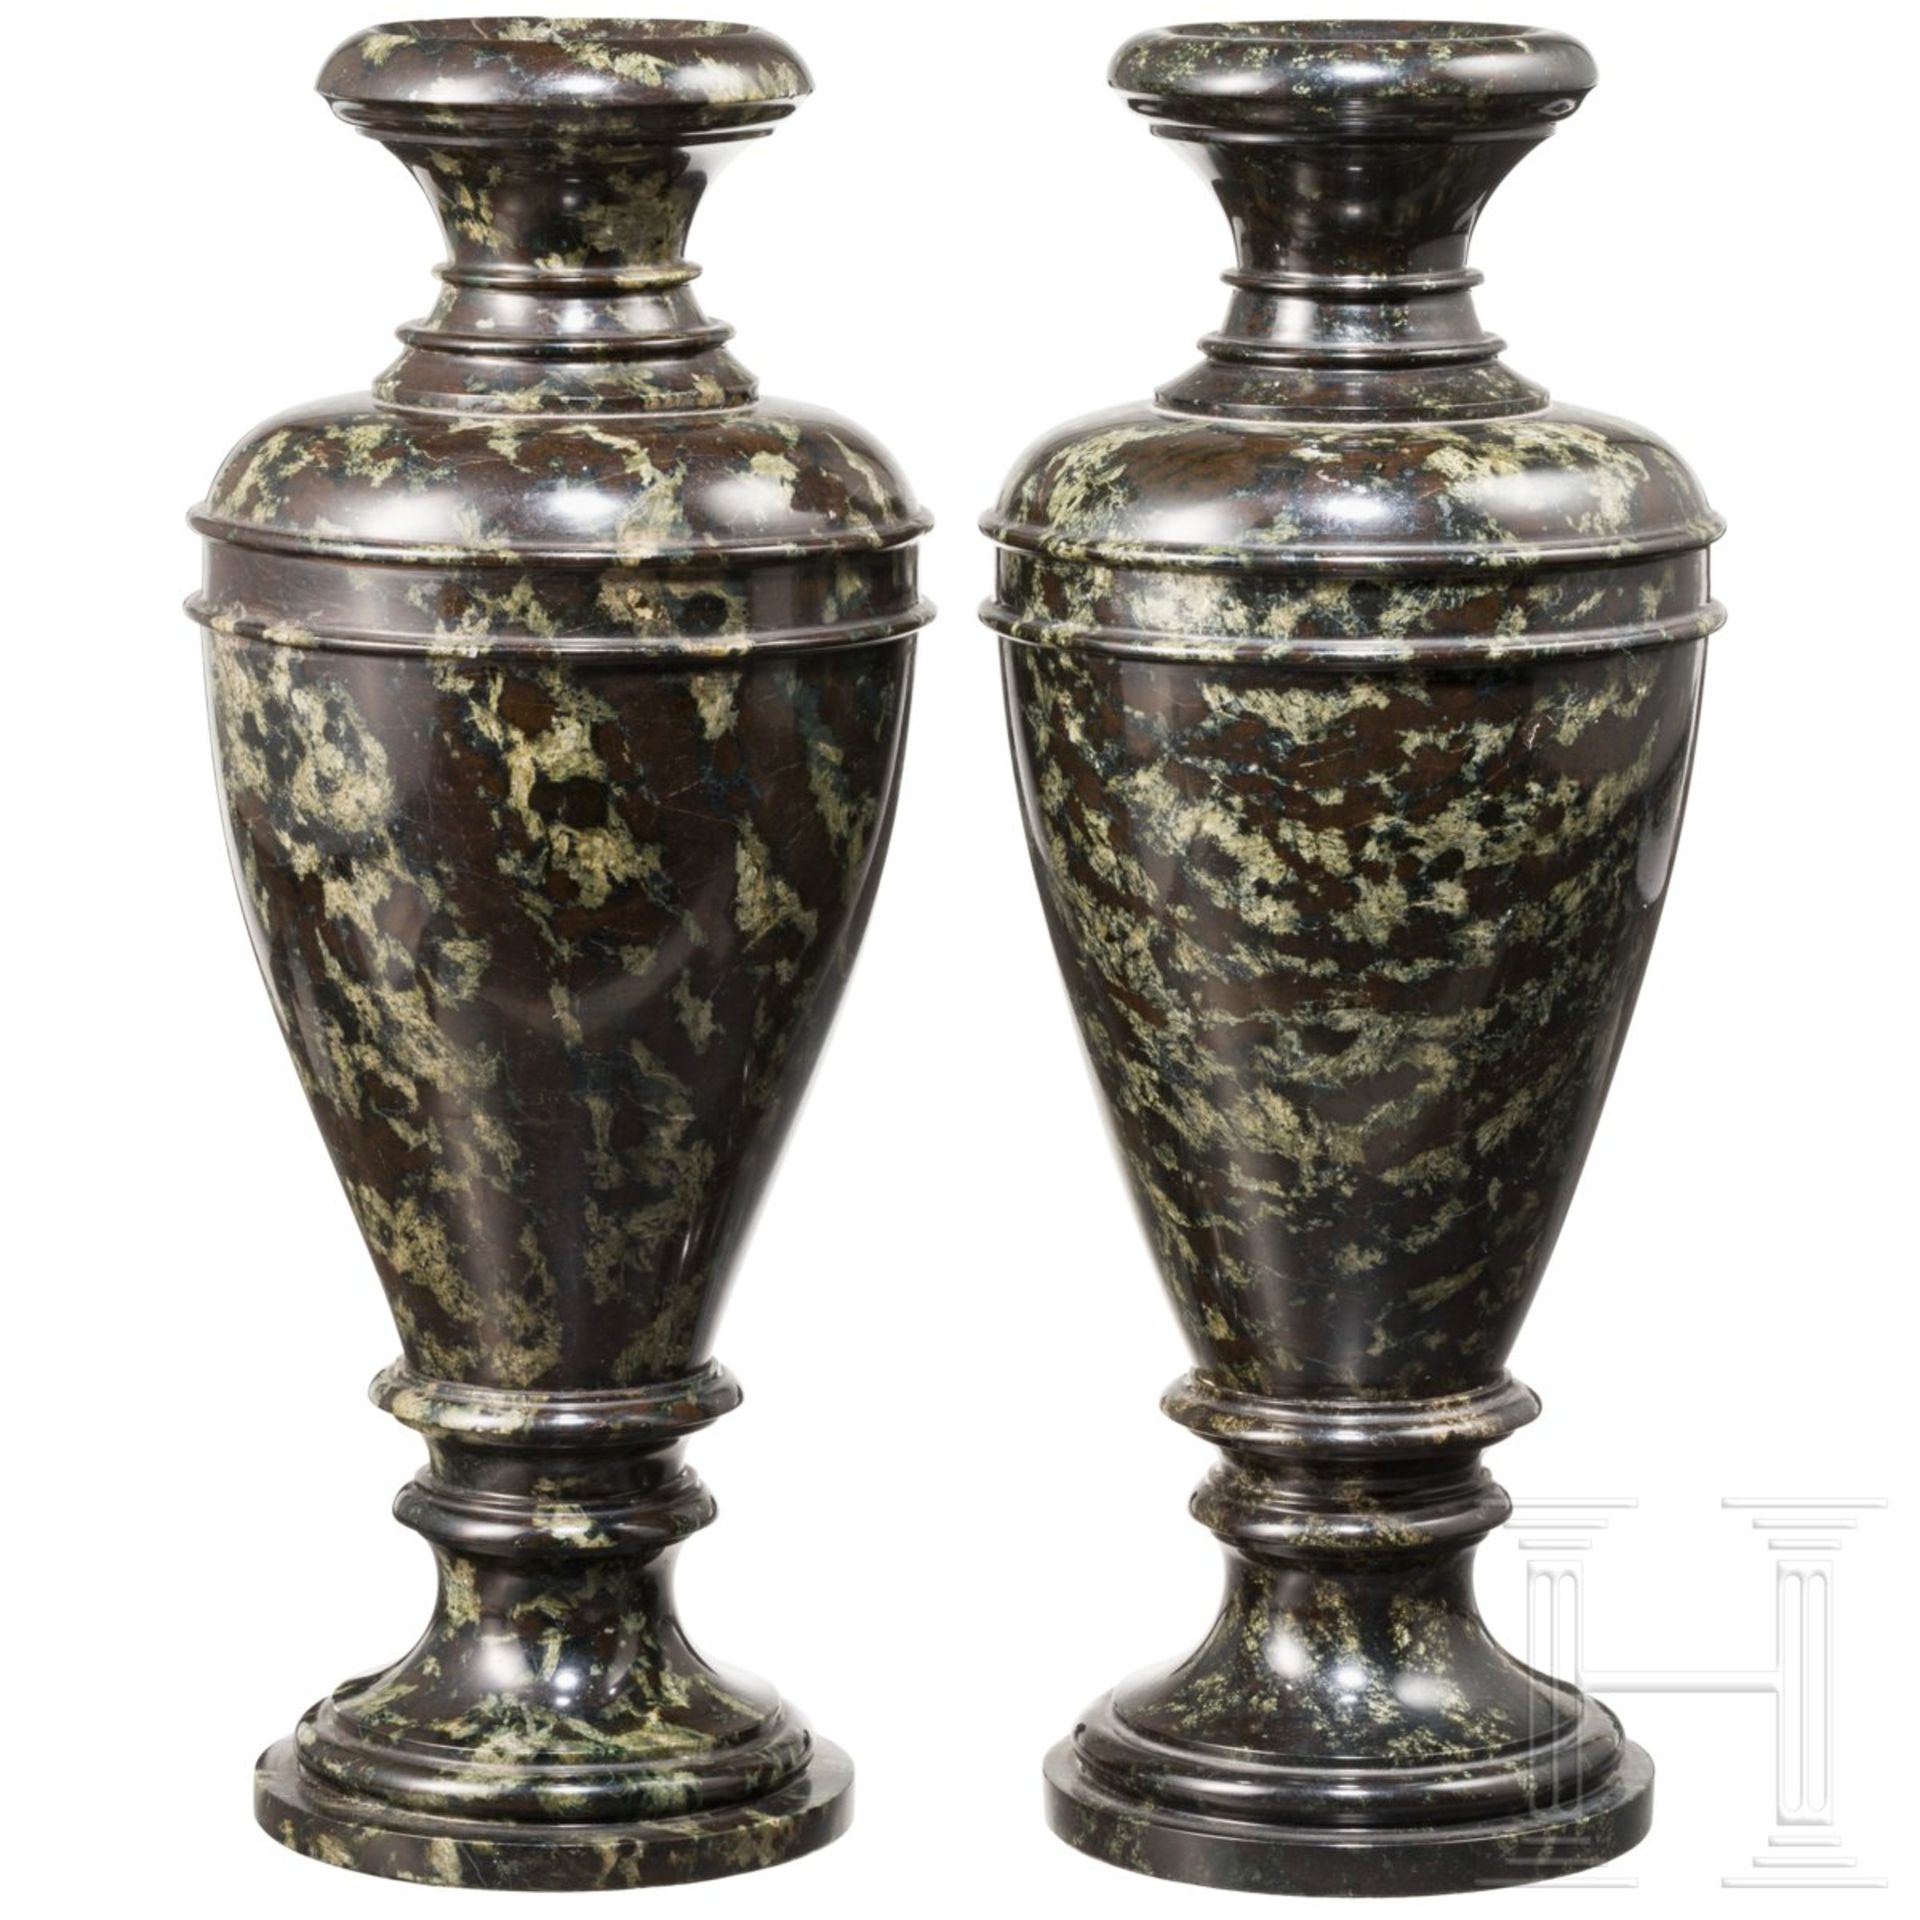 Ein Paar Serpentin-Ziervasen, Sachsen/Zöblitz, Ende 18. Jhdt.Mehrteilig gearbeitete Vasen aus fein